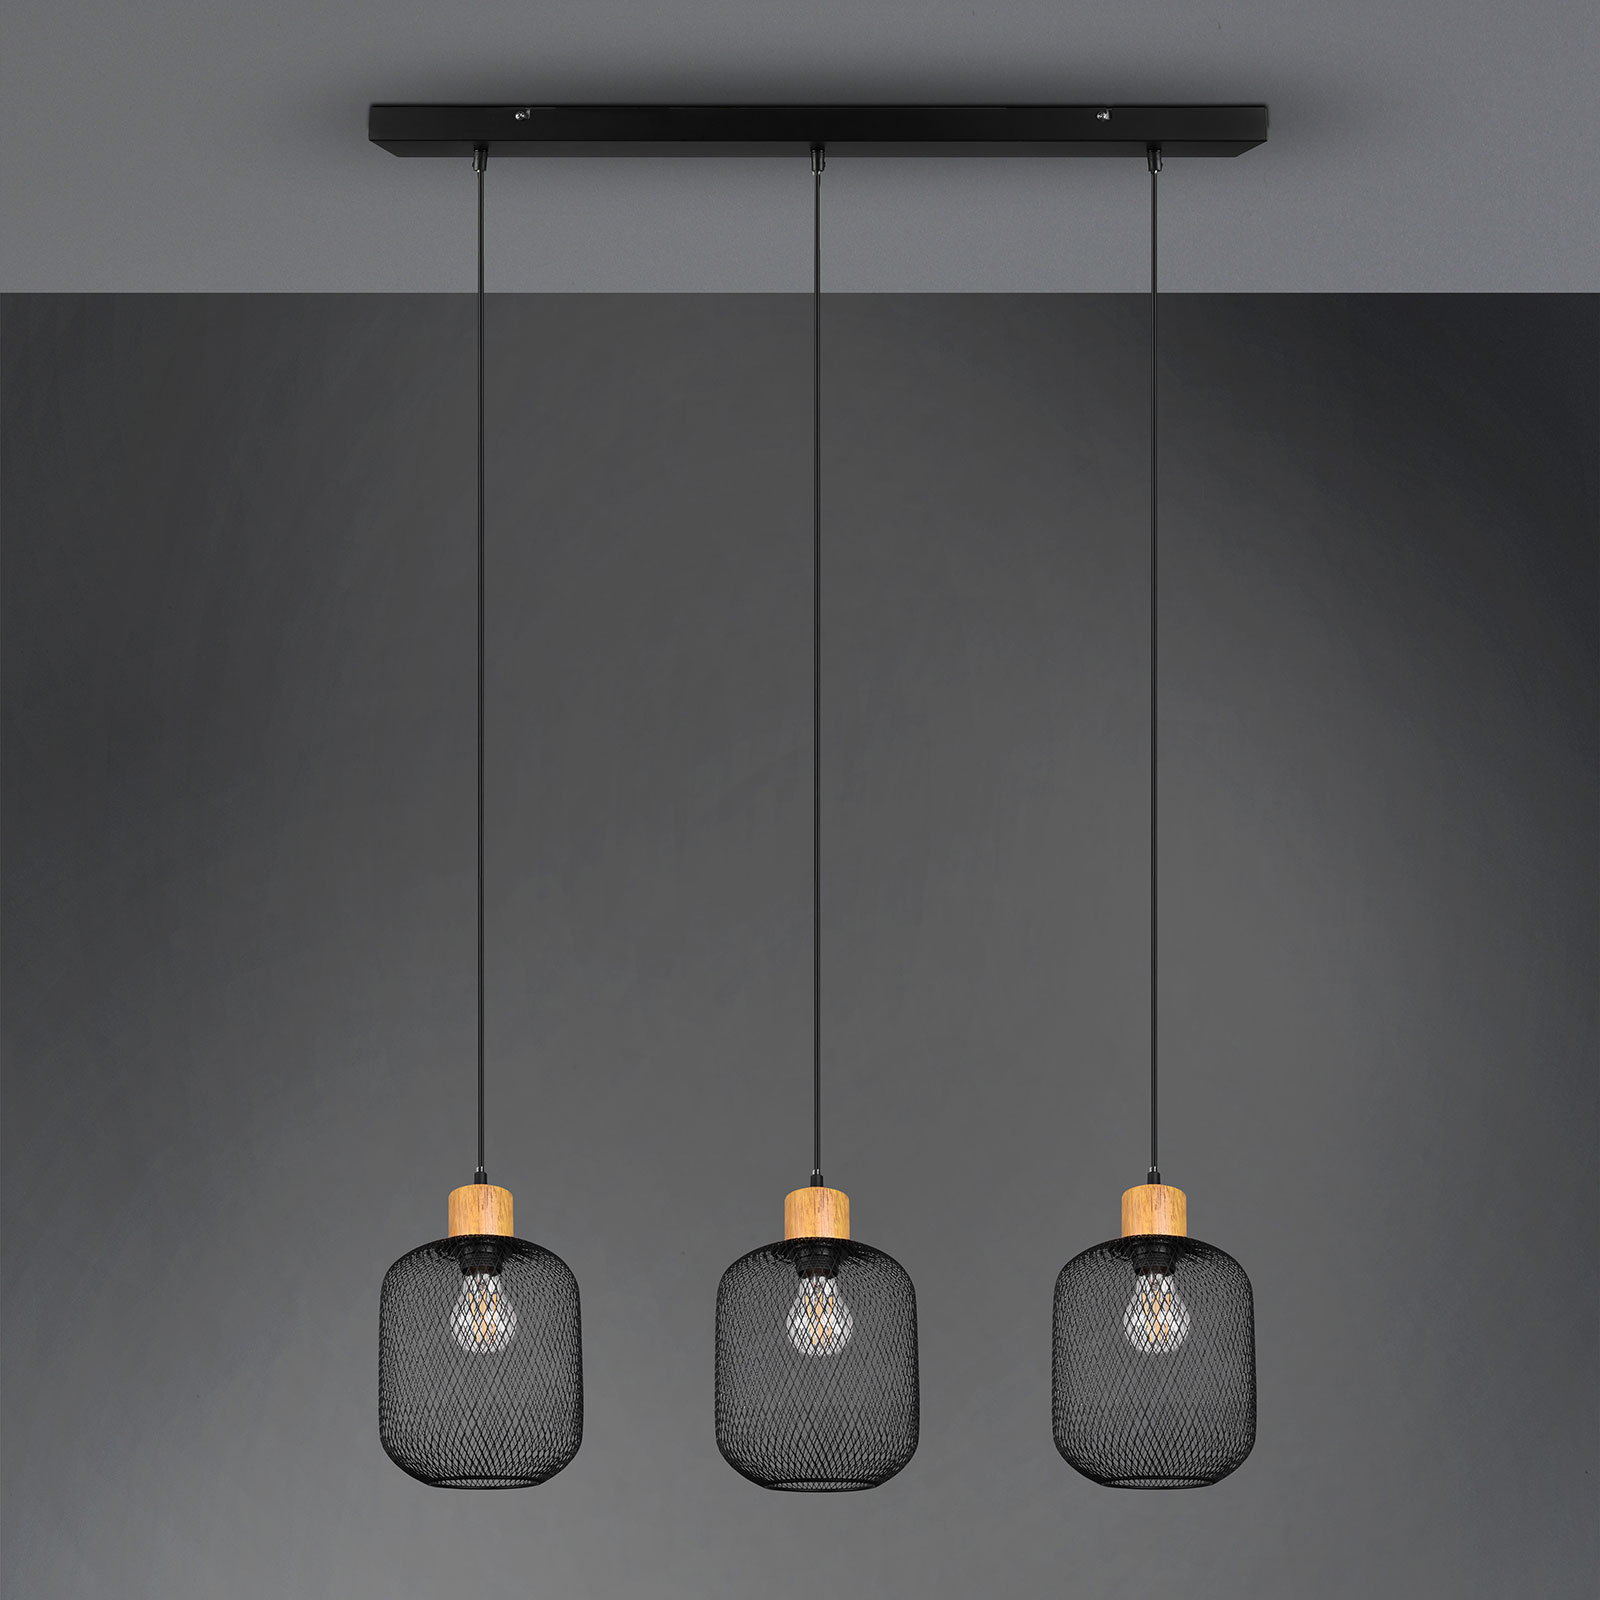 Hanglamp Calimero kooi-look 3-lamps